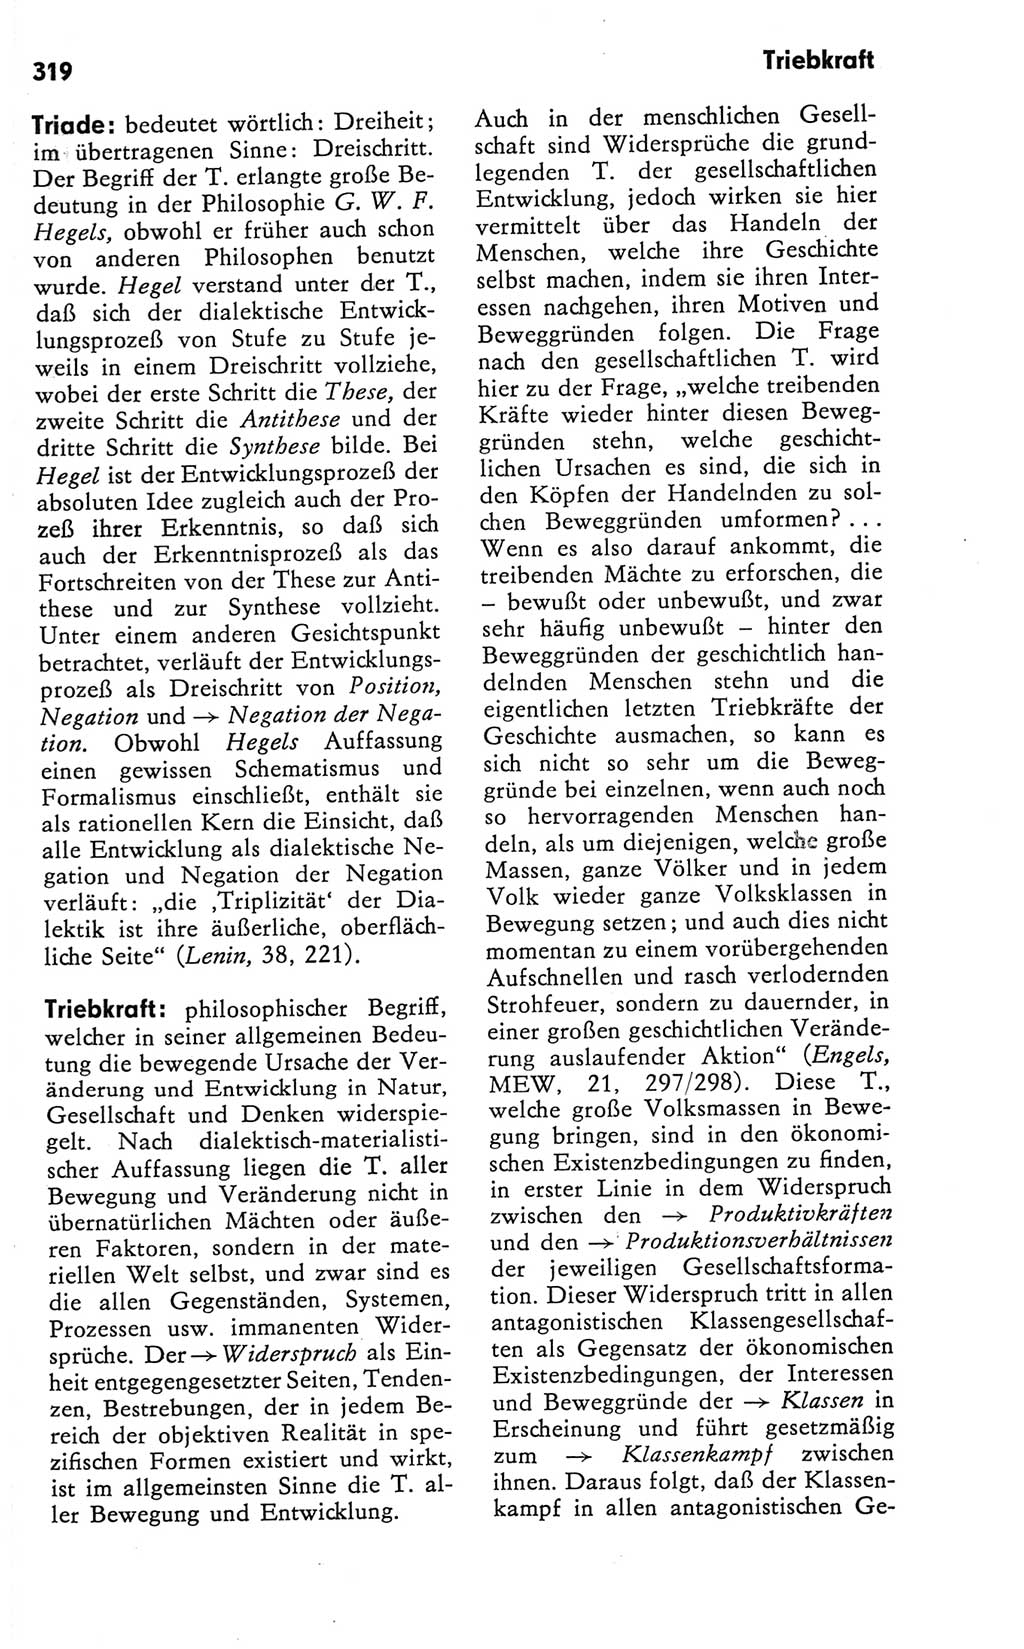 Kleines Wörterbuch der marxistisch-leninistischen Philosophie [Deutsche Demokratische Republik (DDR)] 1981, Seite 319 (Kl. Wb. ML Phil. DDR 1981, S. 319)